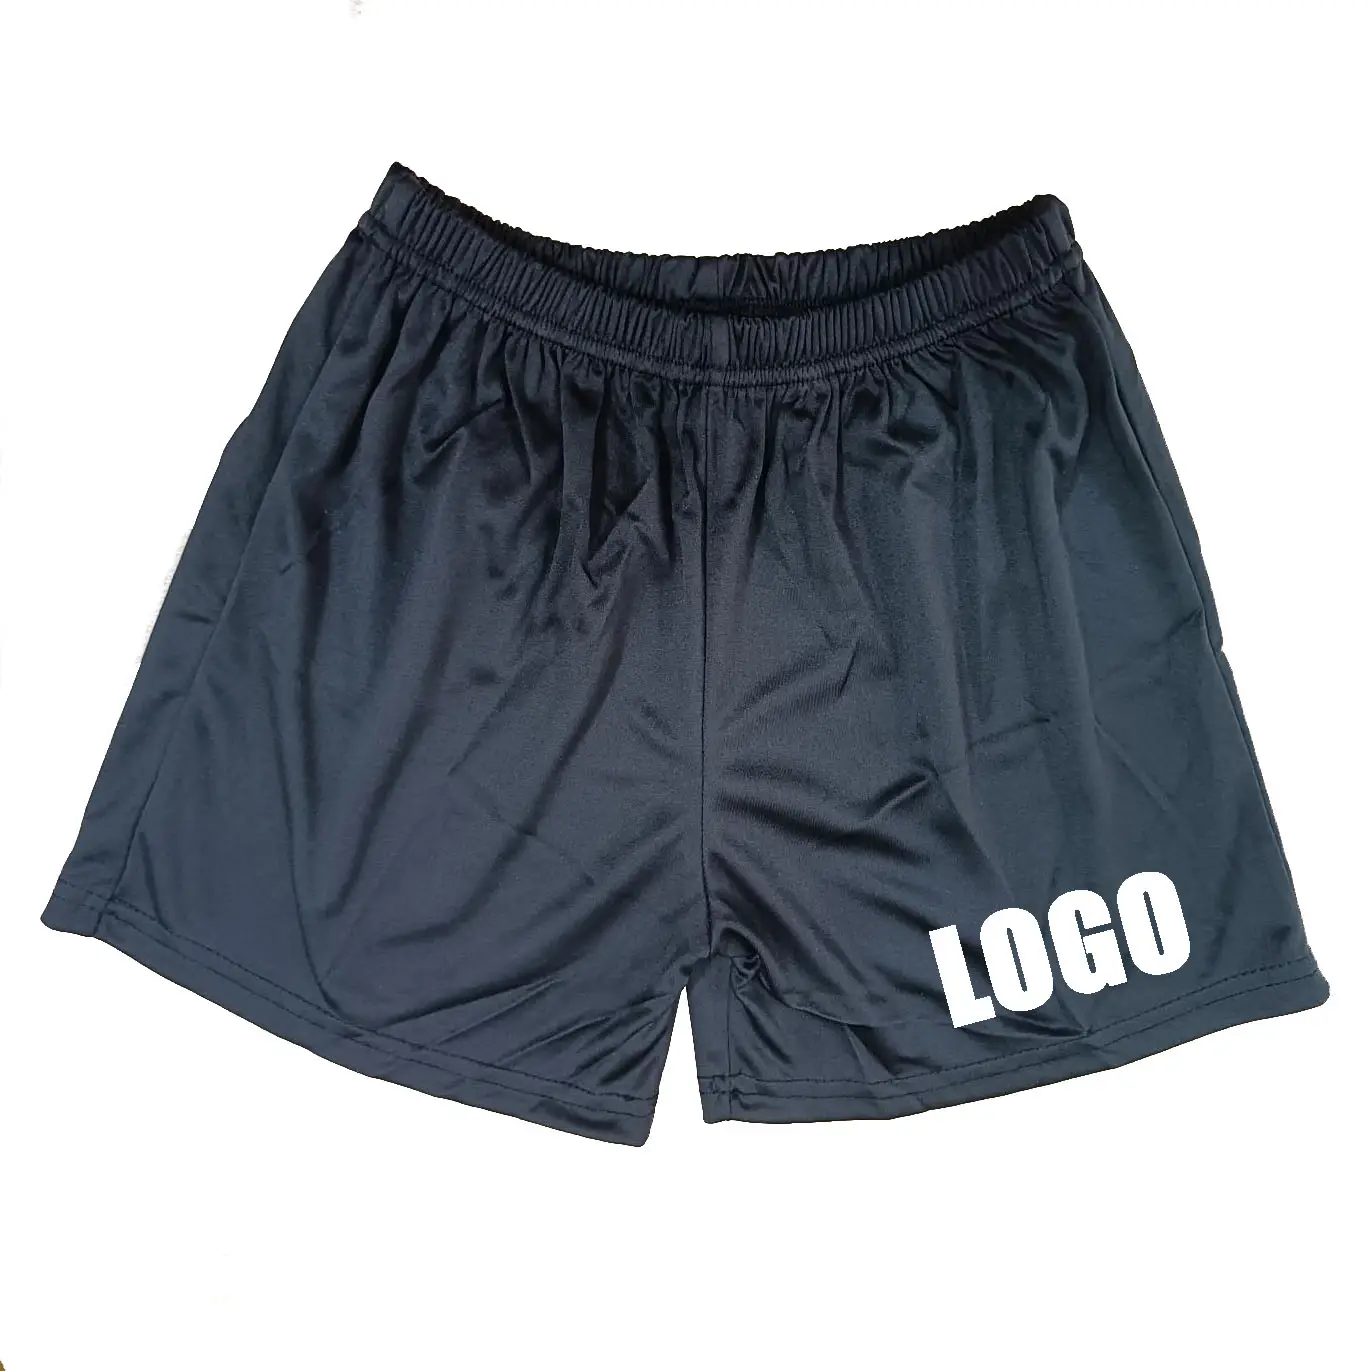 Shorts de futebol personalizados para crianças, uniforme de futebol com estampa personalizada, shorts curtos para crianças